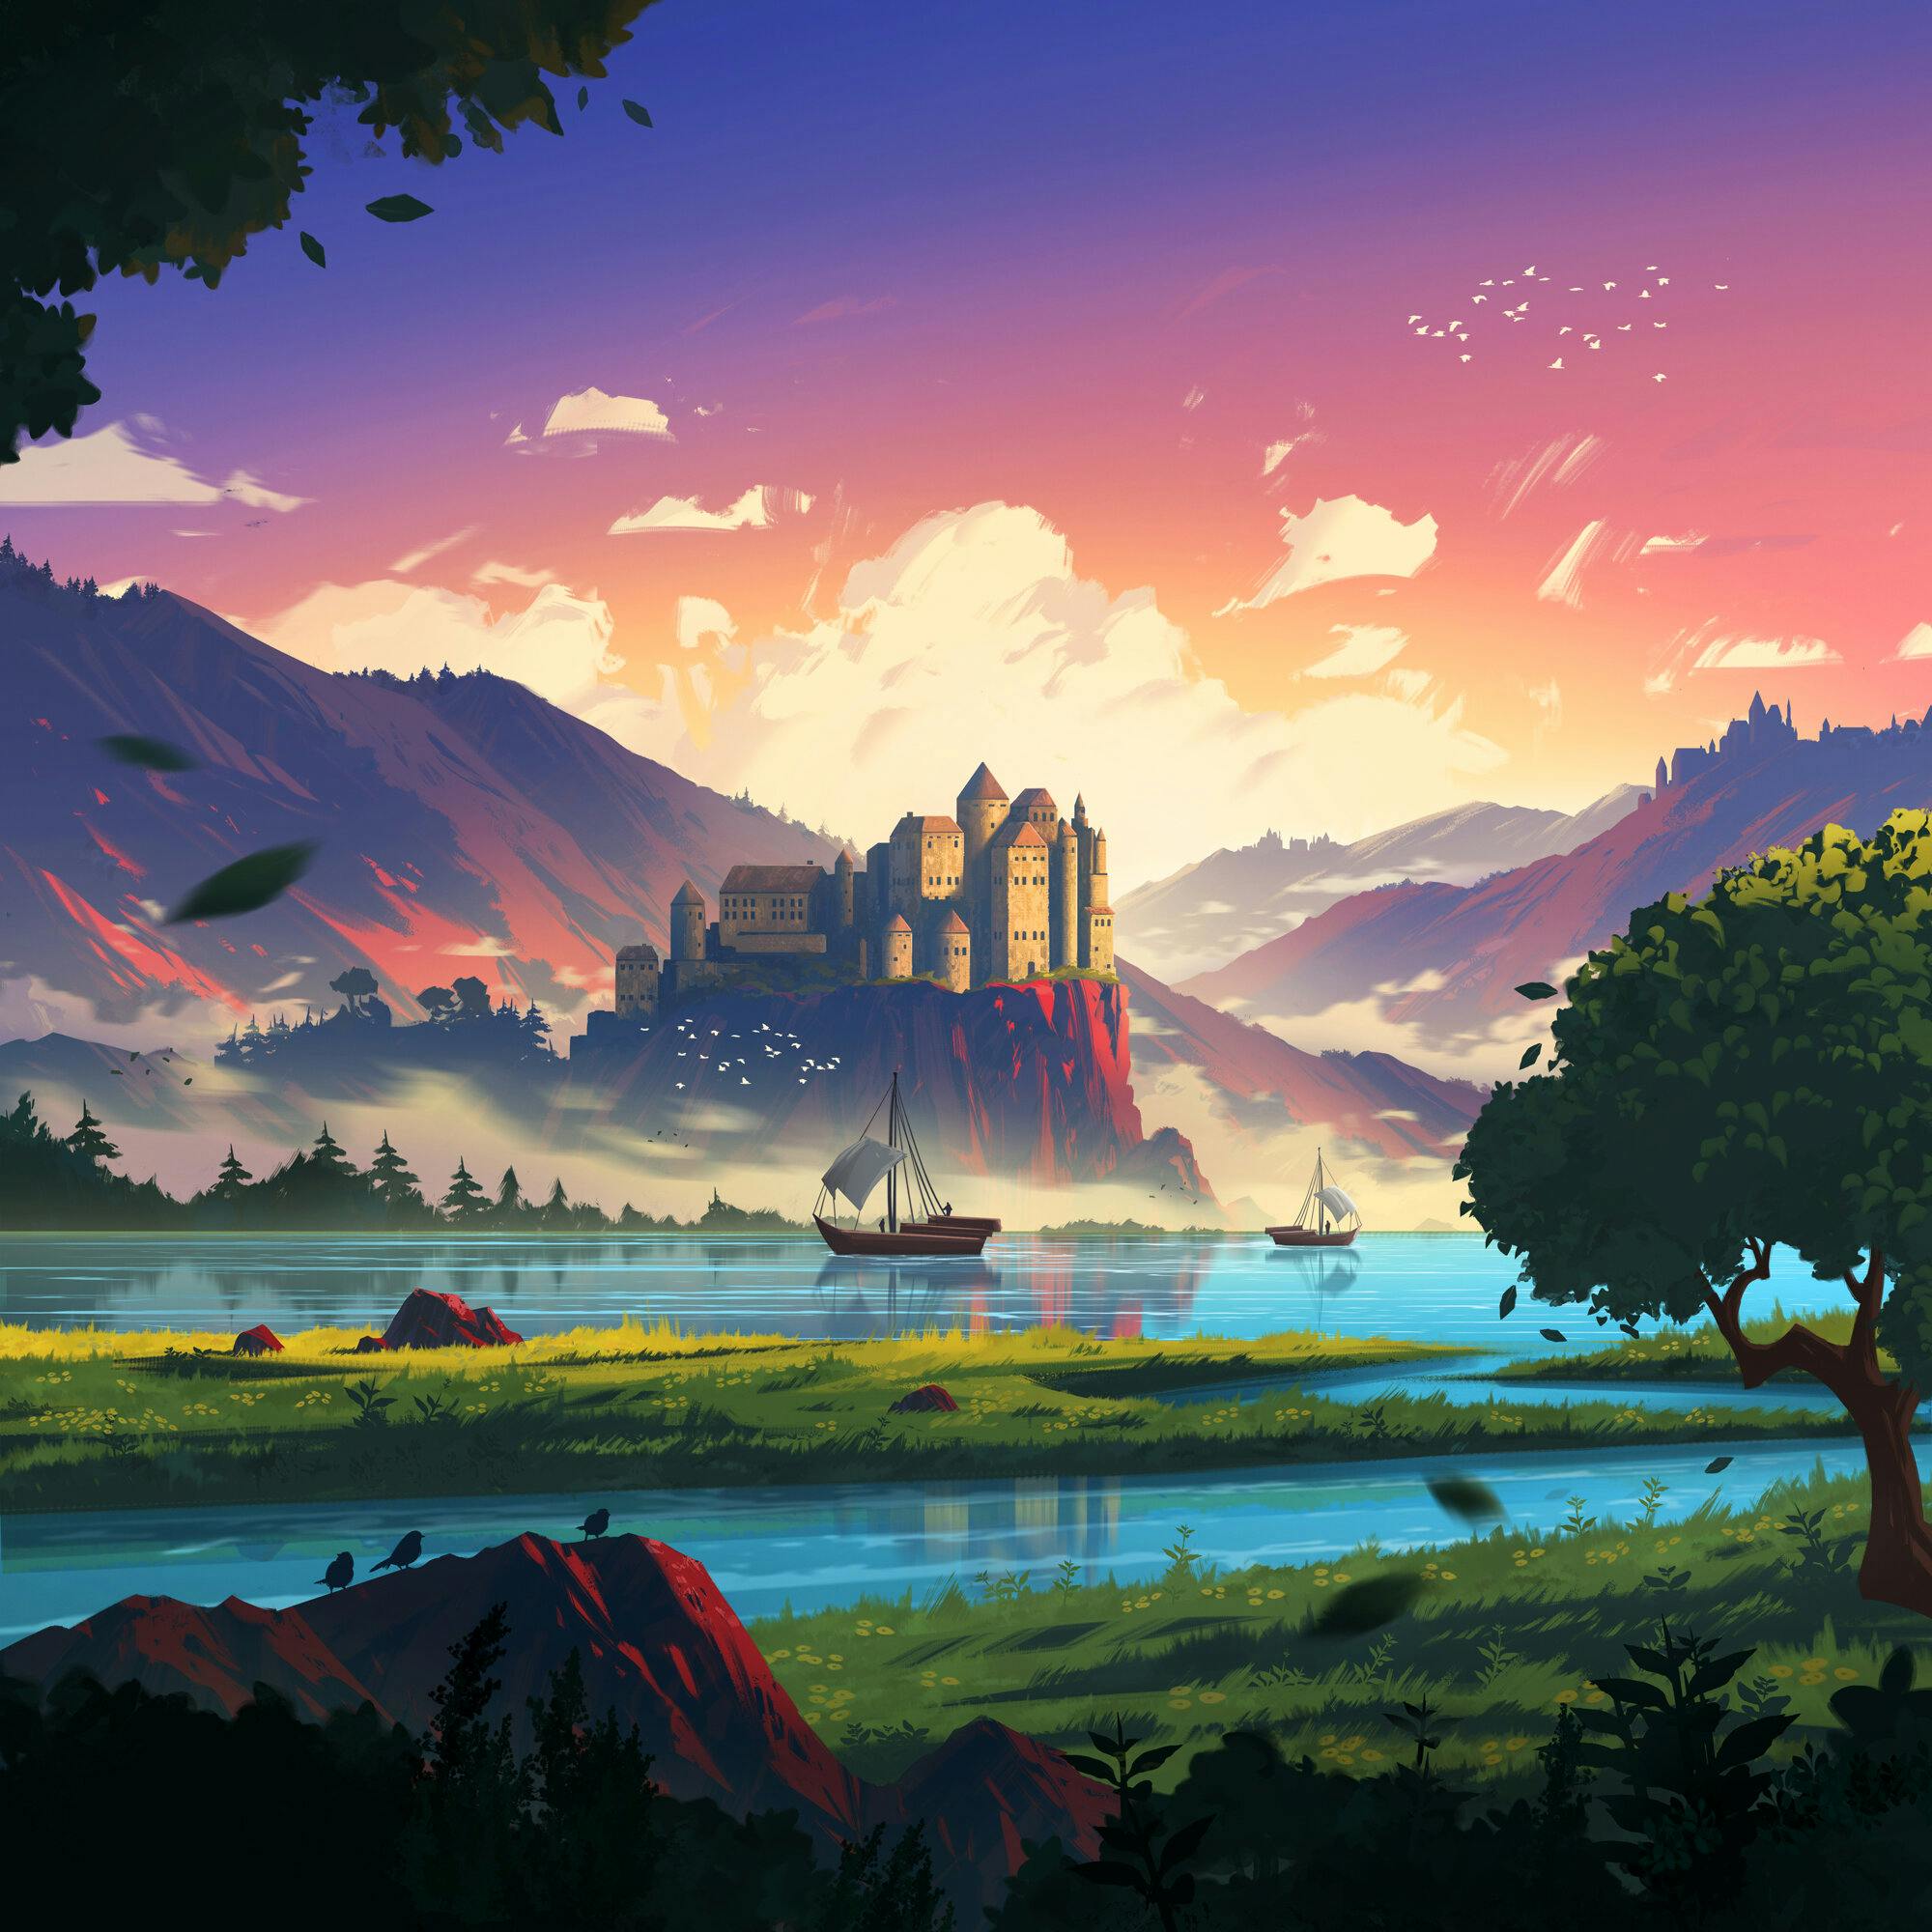 A landscape of a castle